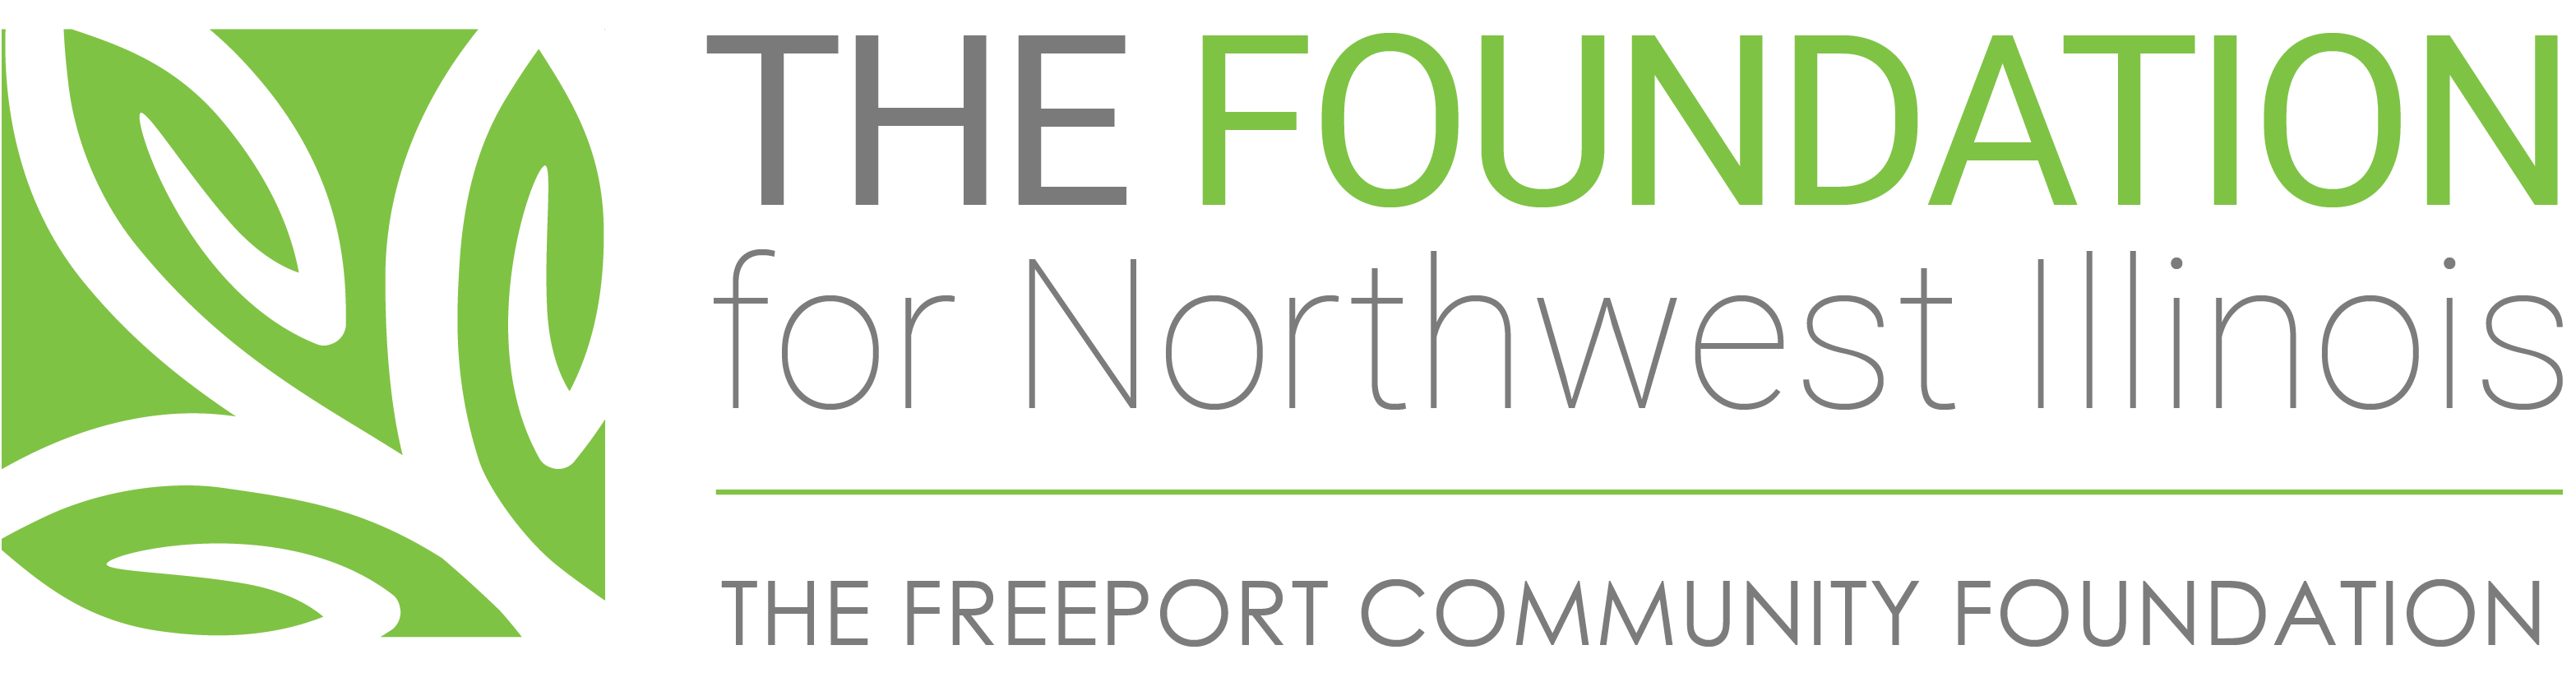 The Foundation for Northwest Illinois |  Freeport Community Foundation